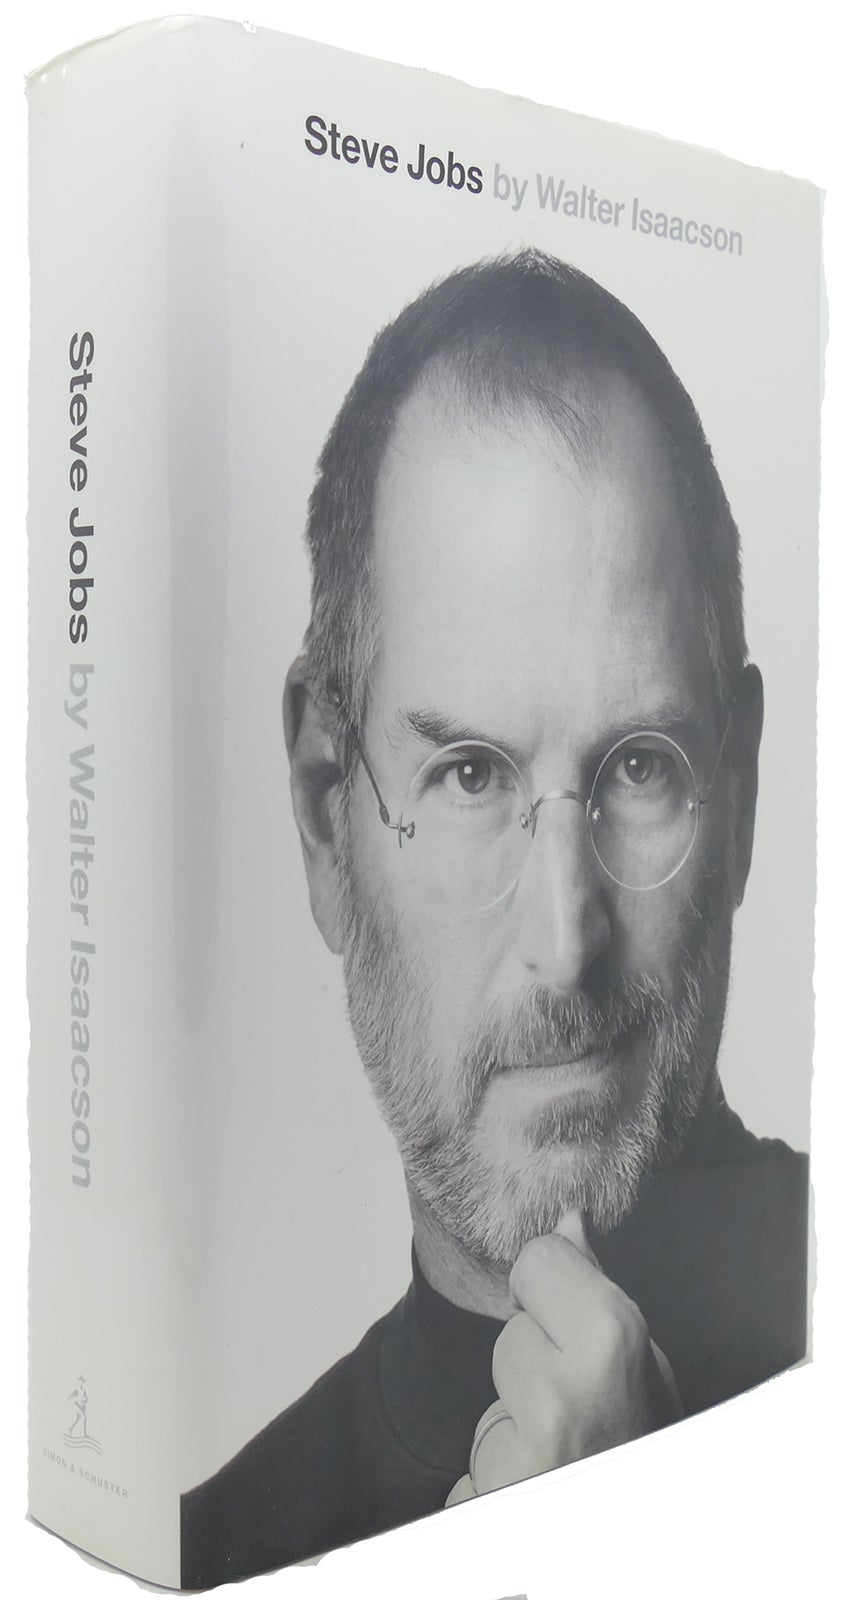 STEVE JOBS by Walter Isaacson - Steve Jobs on Rare Book Cellar